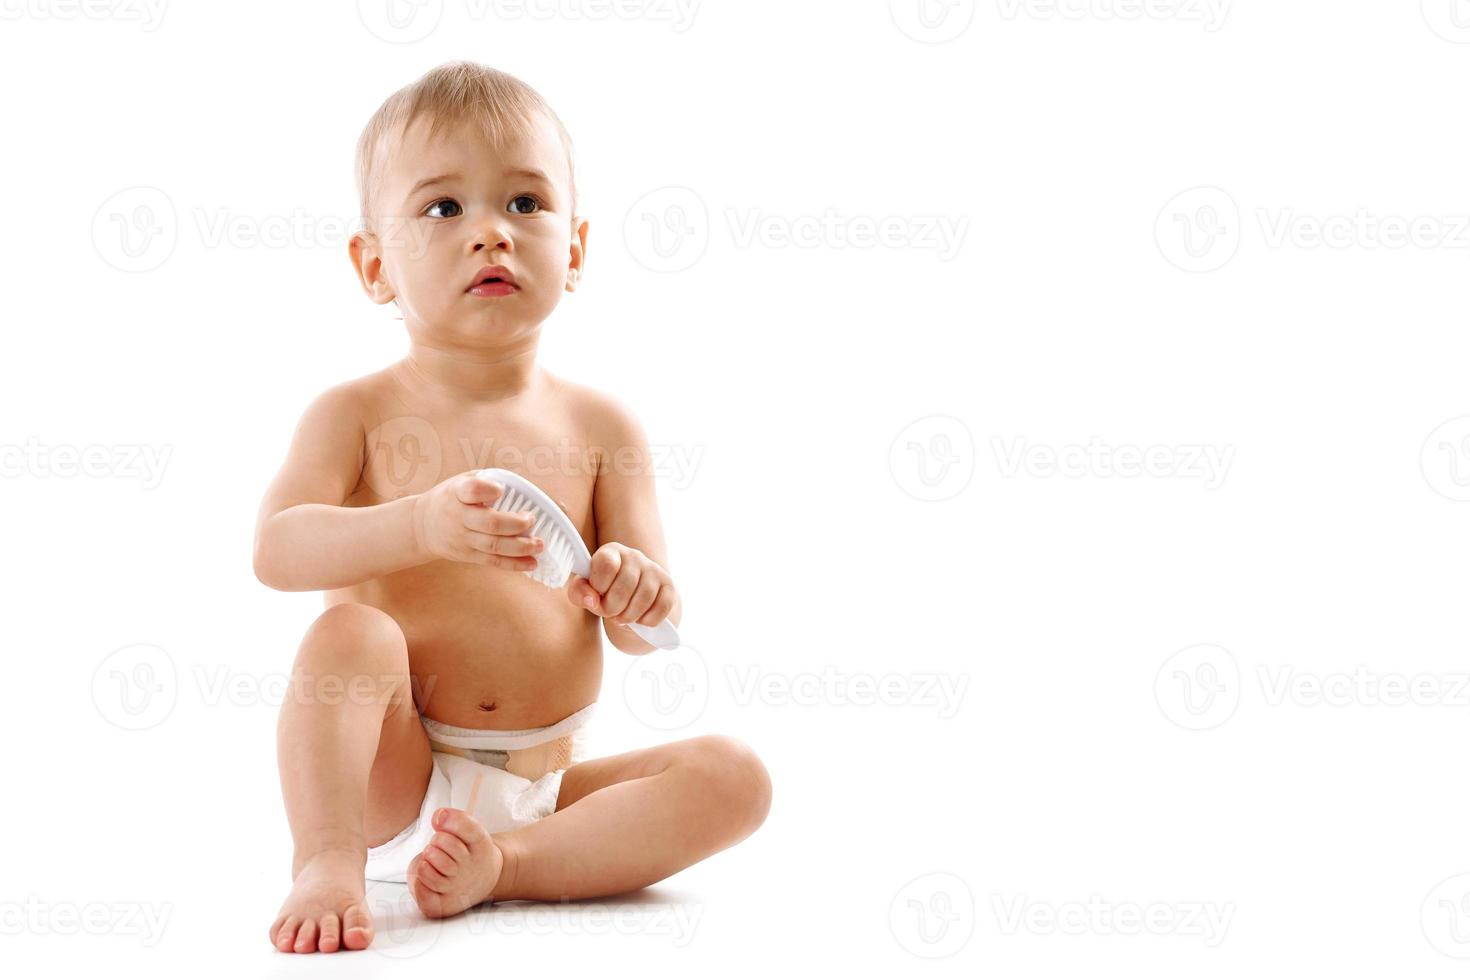 niño pequeño en pañales sentado y jugando con cepillo. foto